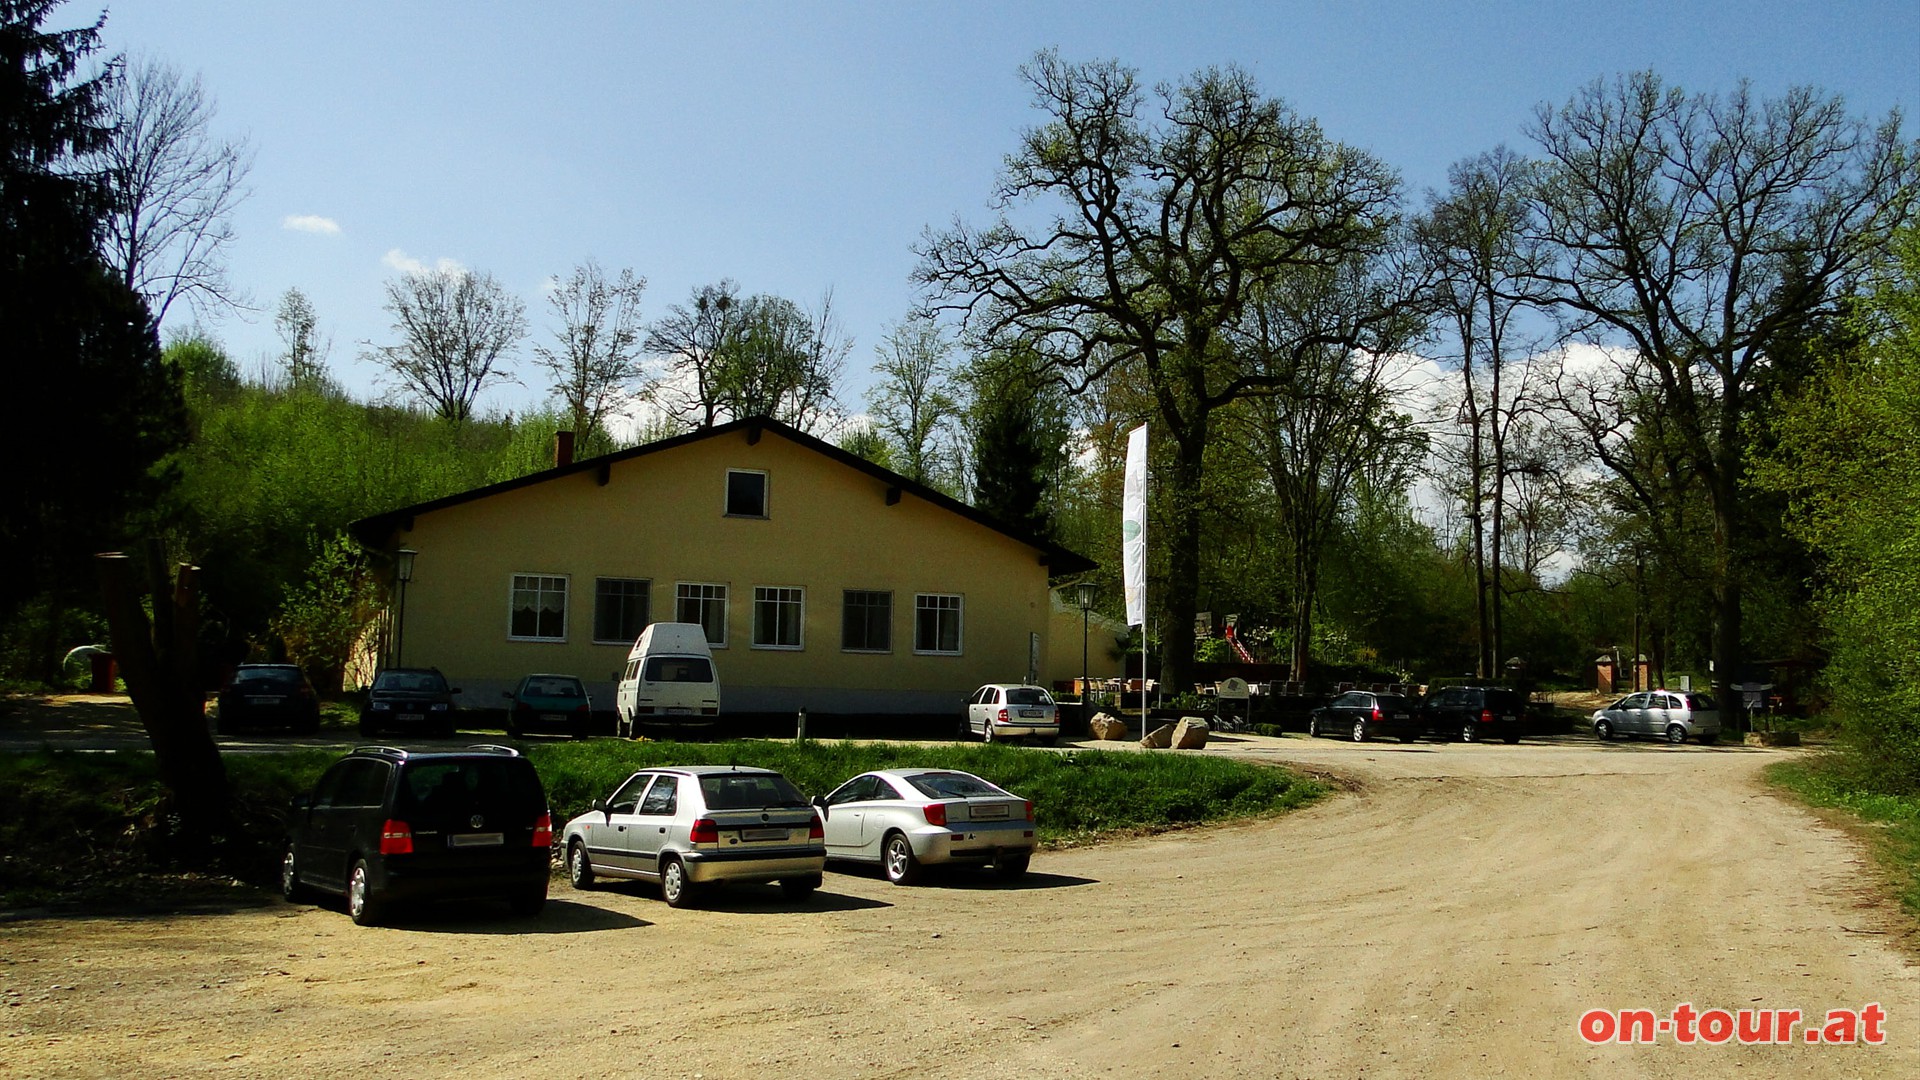 Ausgangspunkt ist das -Goldene Brndl Gasthaus- im Rohrwald. Auf dem Grund der Rohrwaldquelle soll sich, laut Sage, ein goldenes Ringlein befinden.